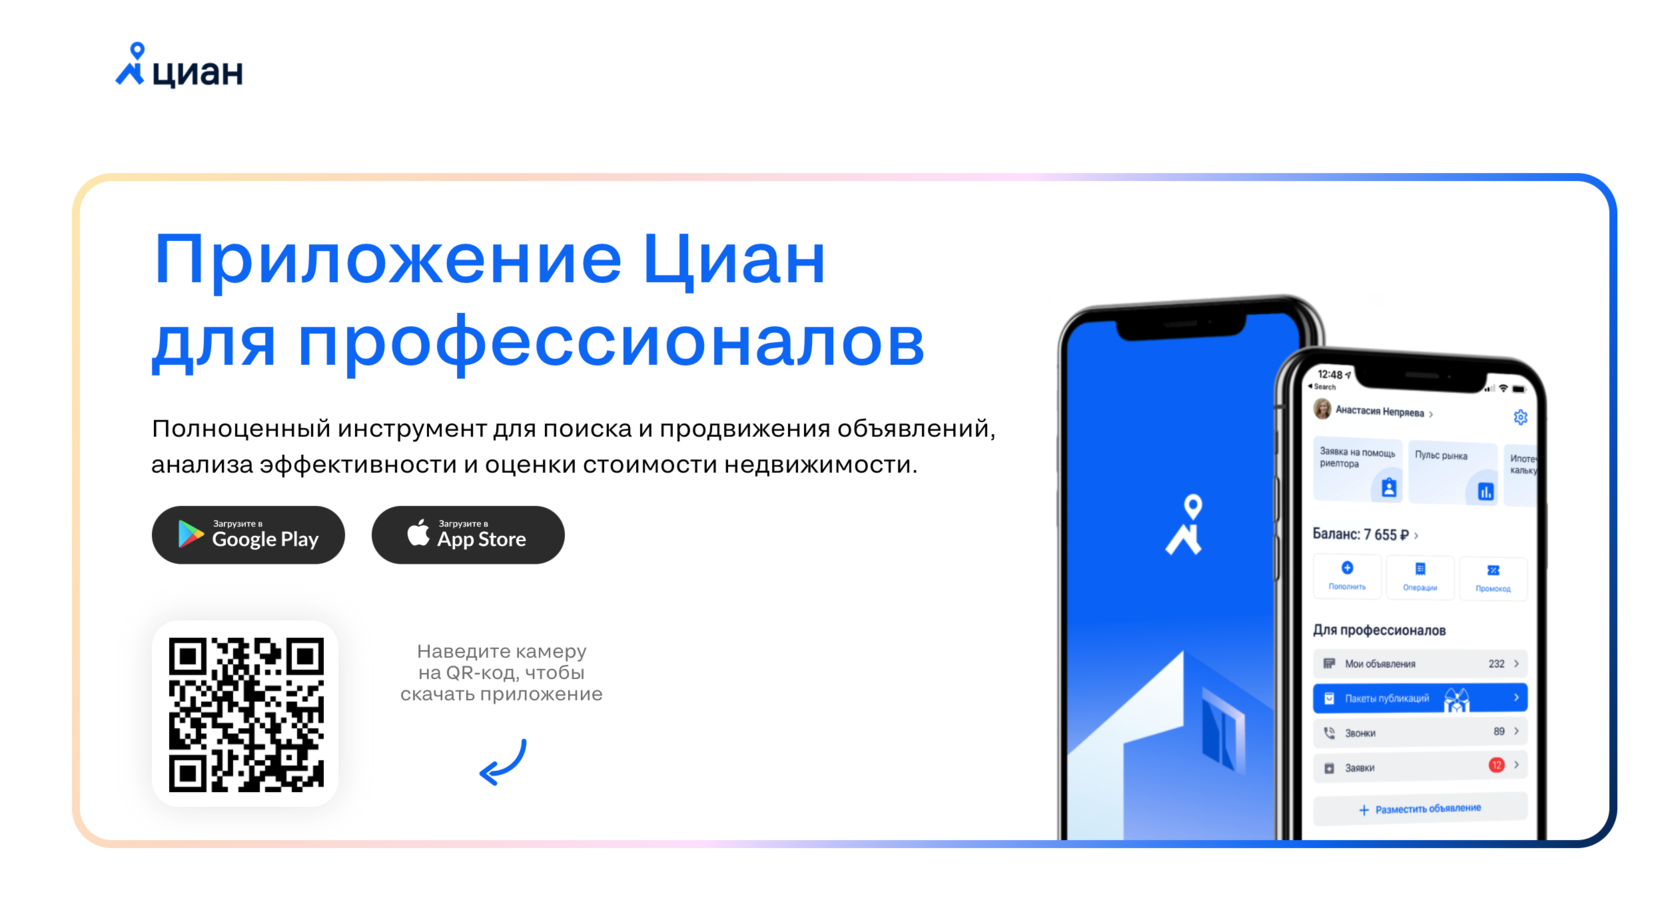 Приложение телеграмм установить на айфон бесплатно русском языке фото 117